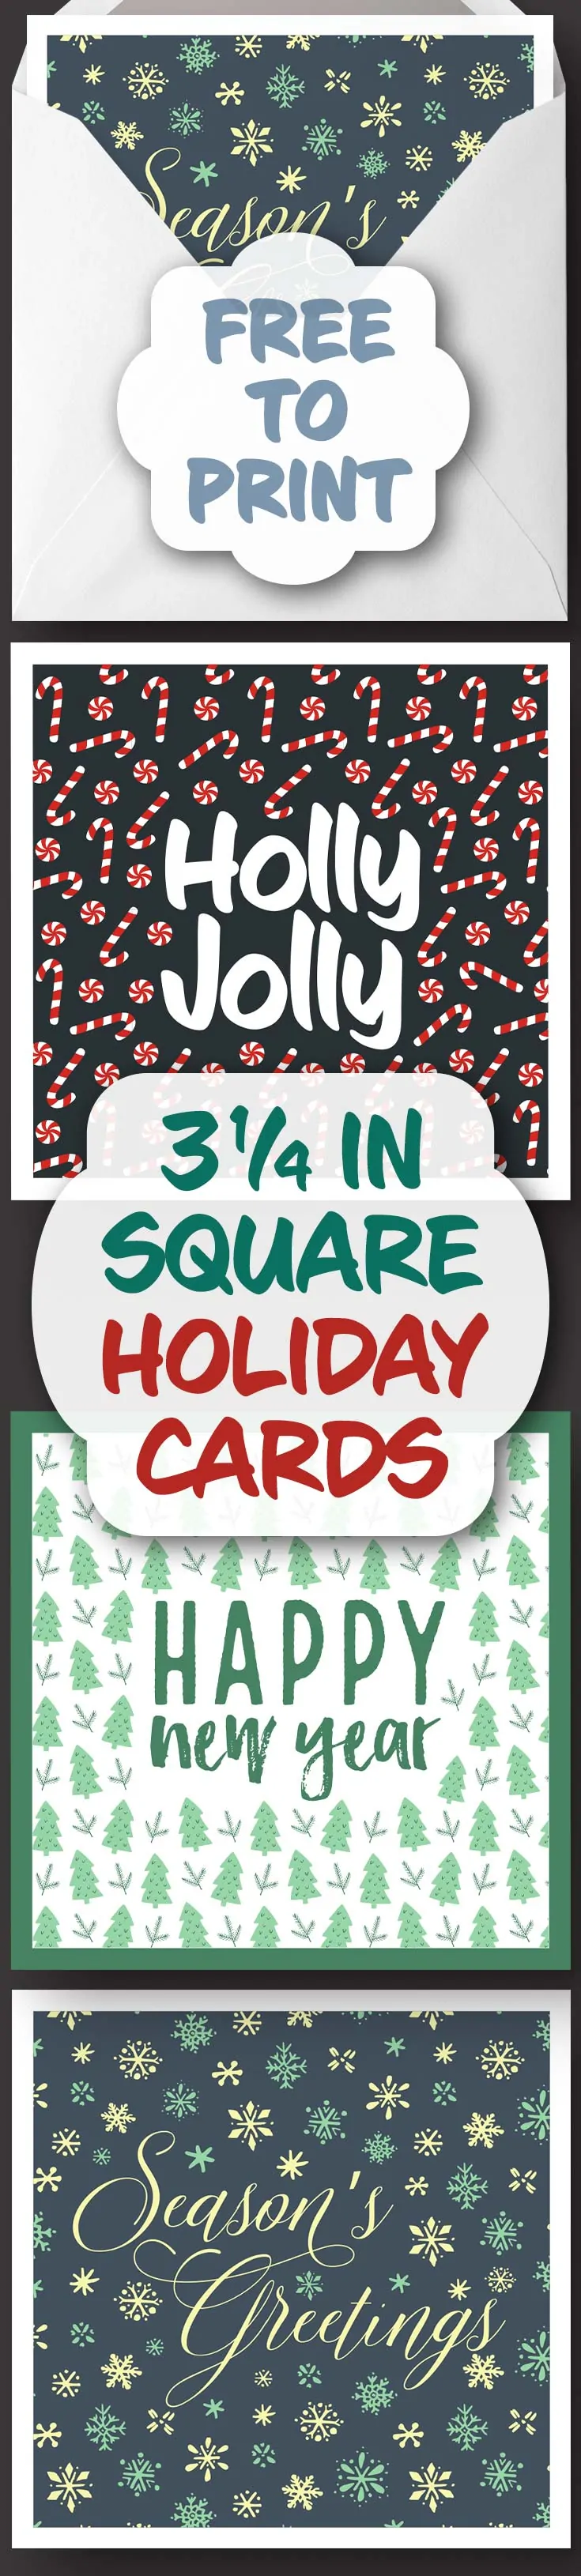 free-printable-foldable-christmas-cards-printable-templates-free